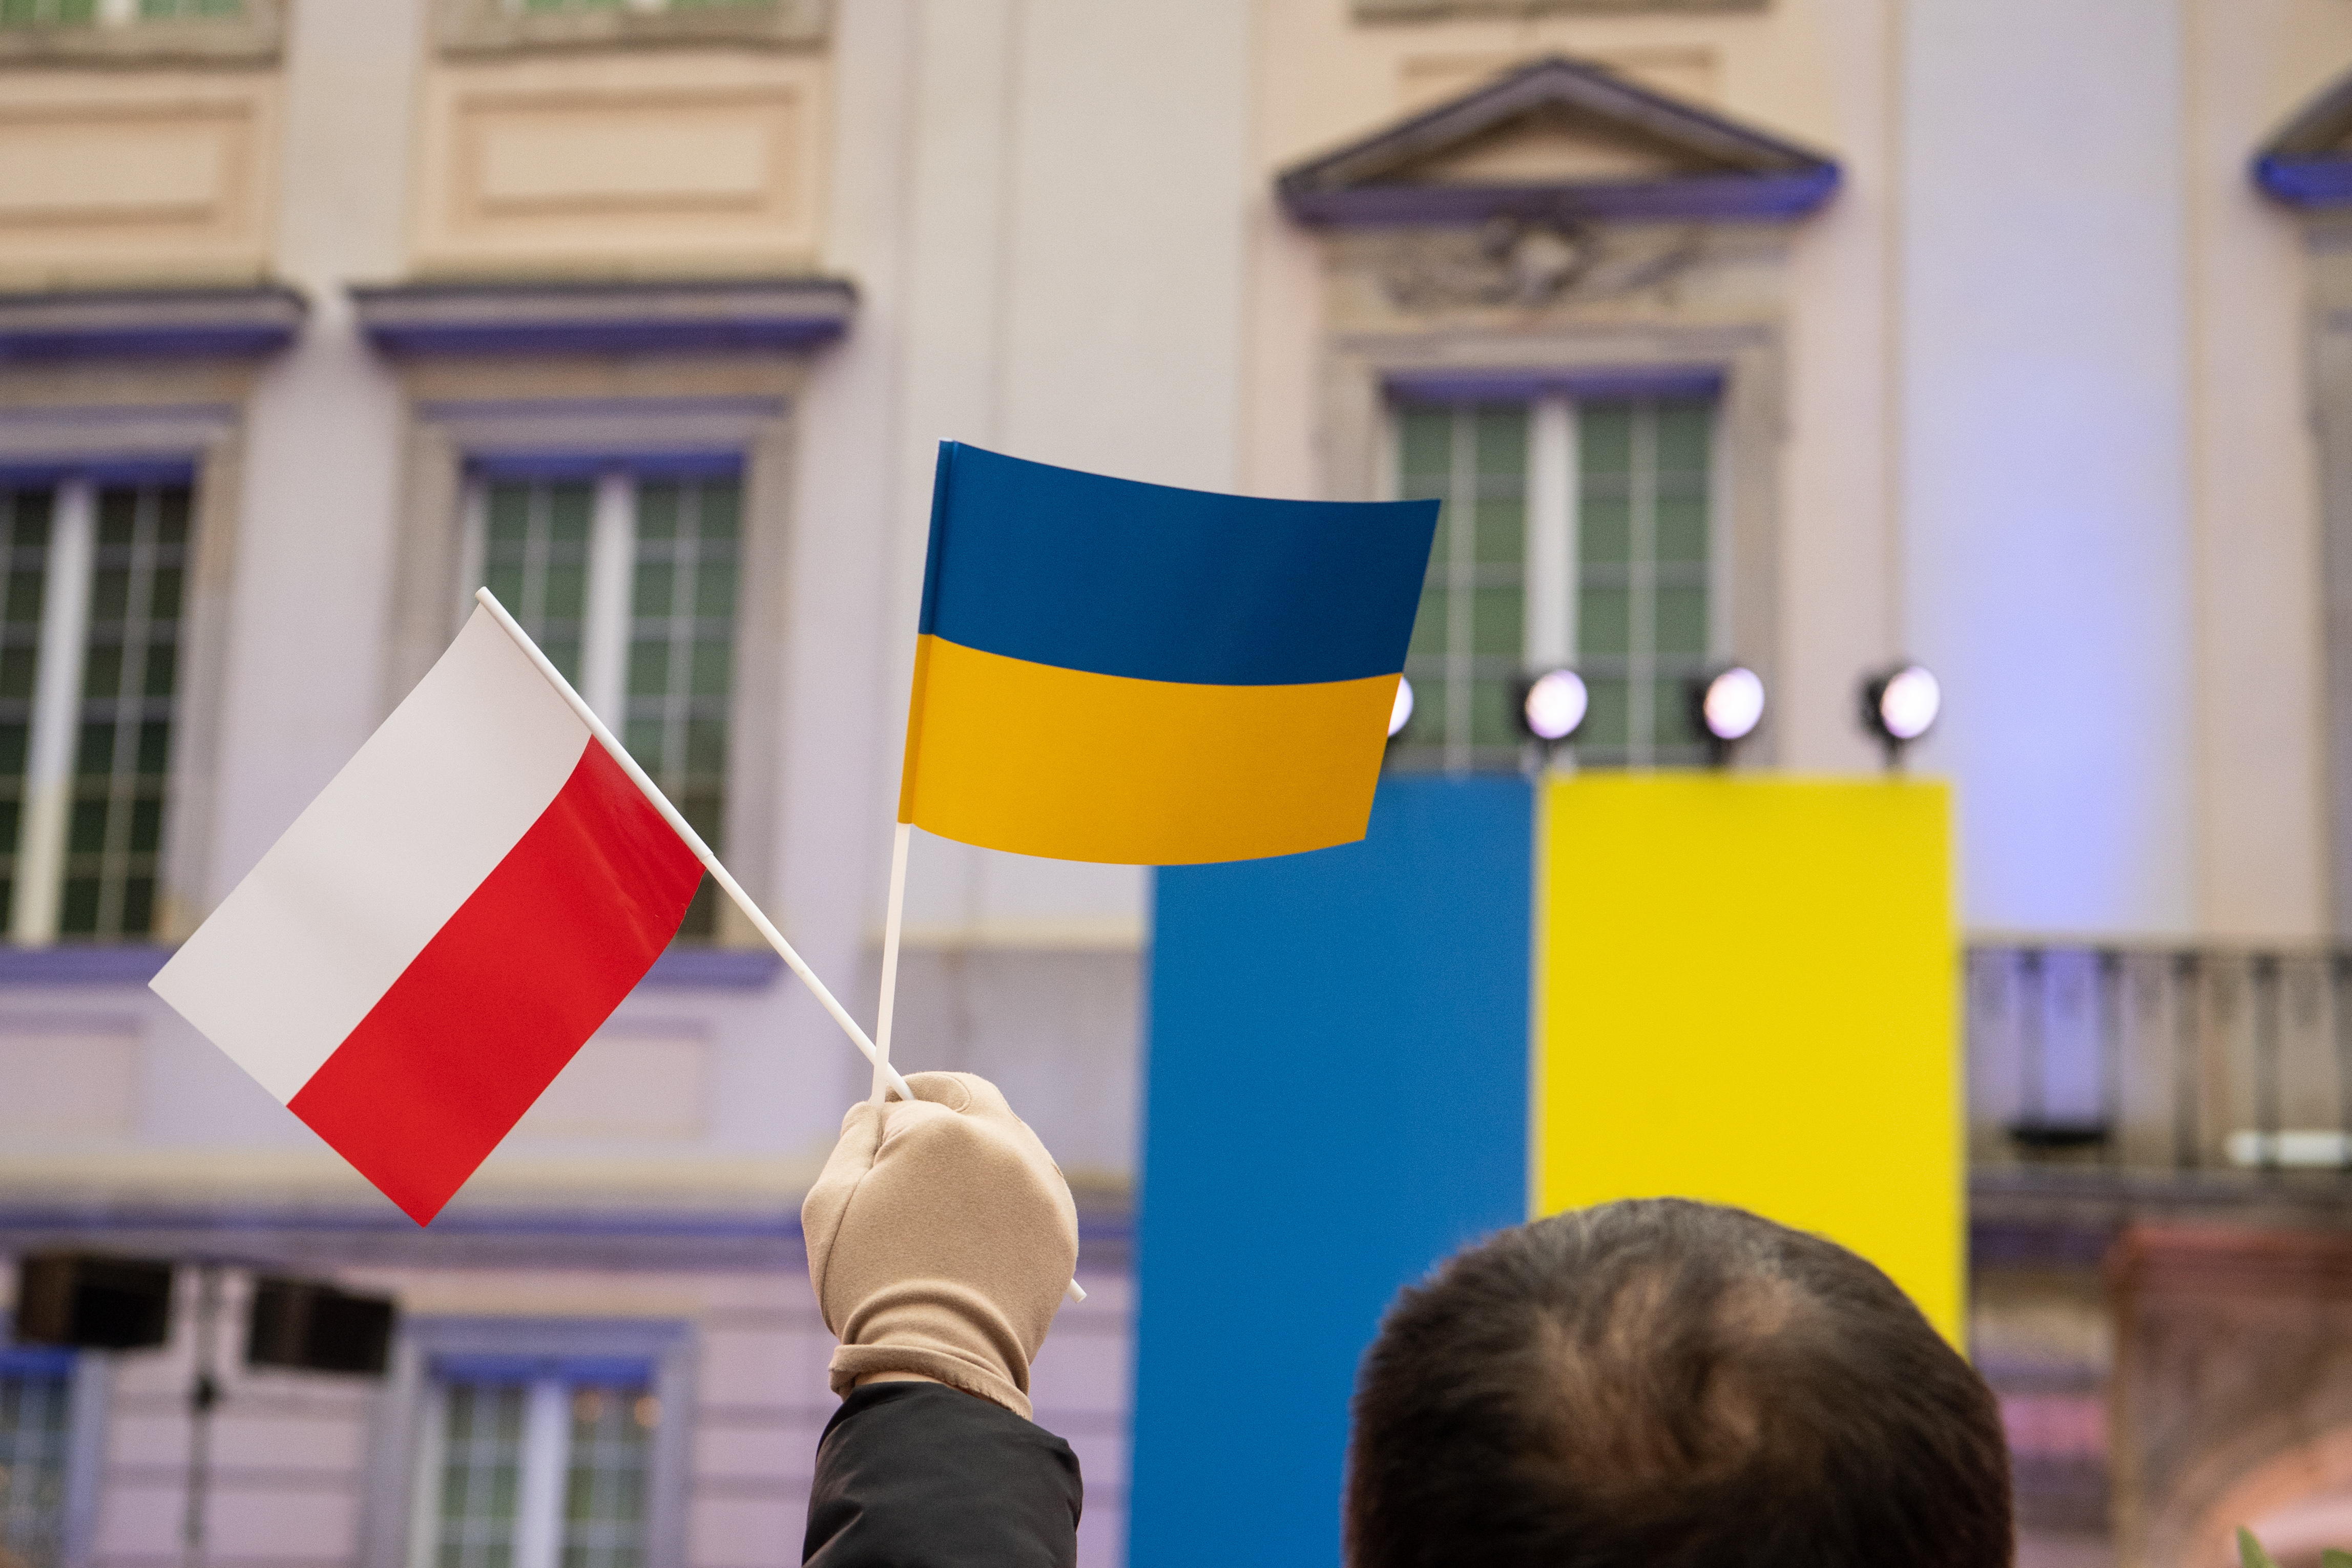 Прапори Польщі та України в руках демонстранта на внутрішньому дворі Королівського замку у Варшаві. Фотоілюстрація. Fot. PAP/Andrzej Lange